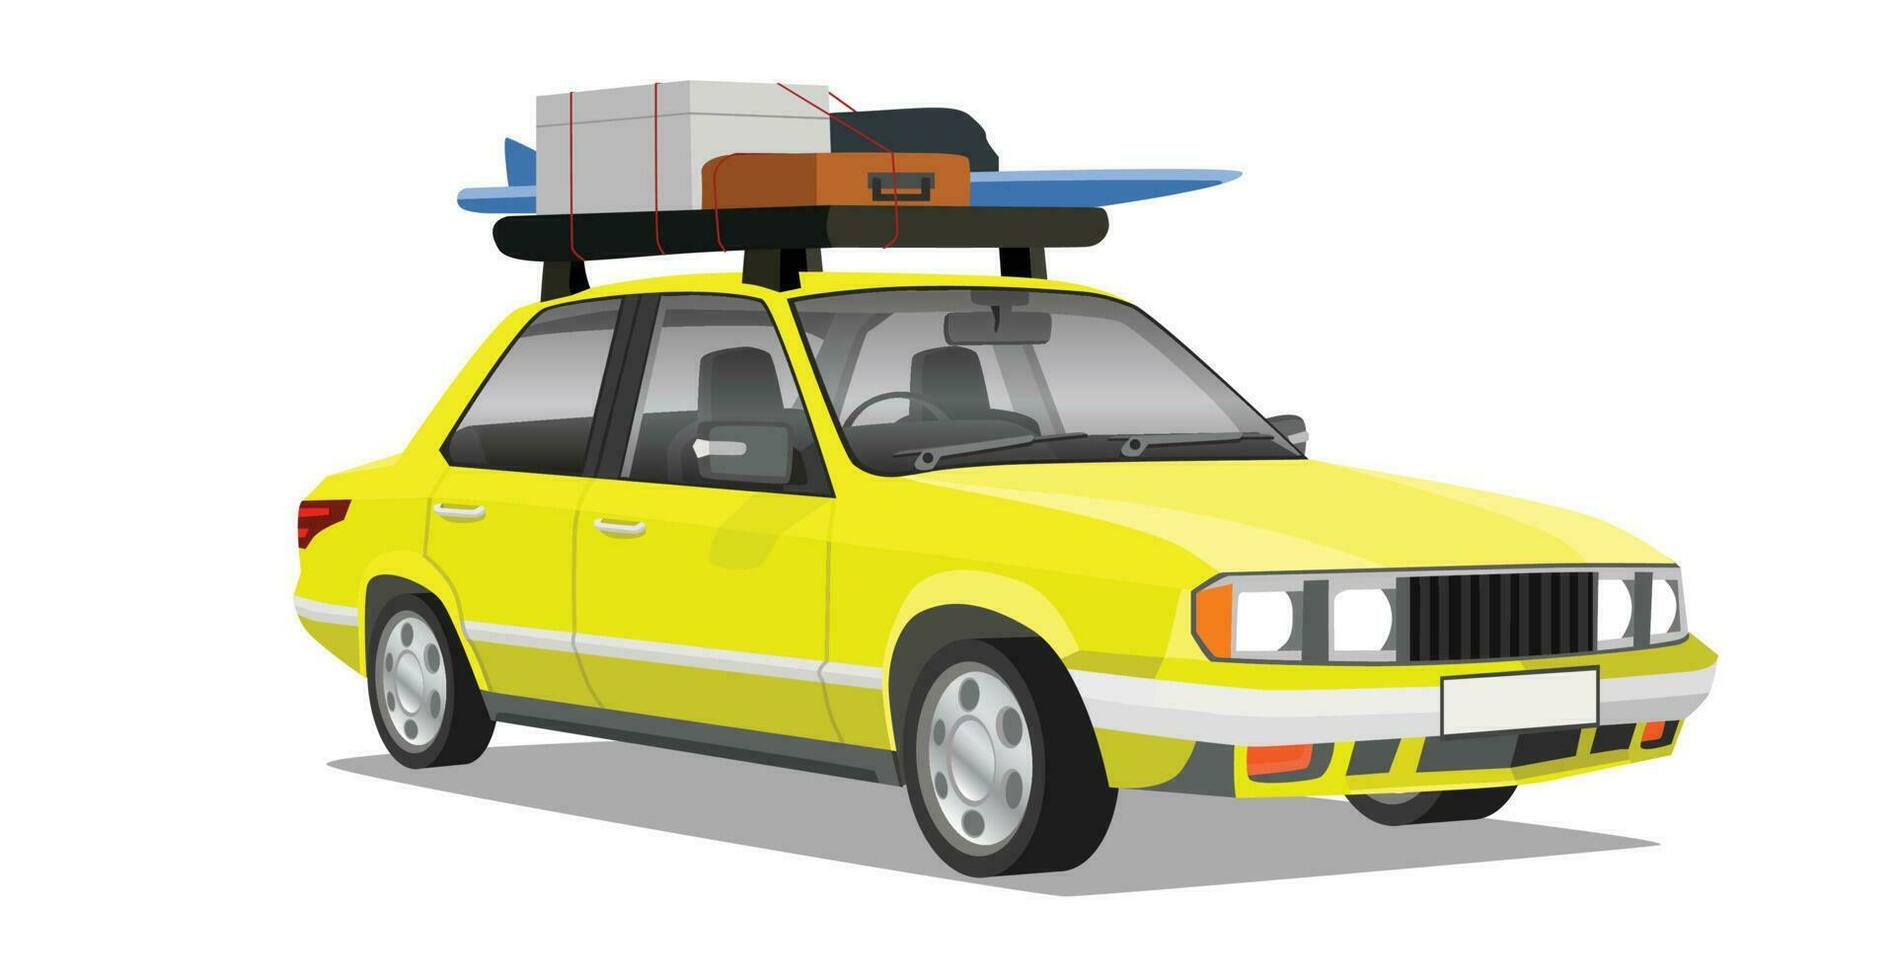 obejct av klassisk bil gul Färg kan se interiör. inuti med styrning hjul, trösta med sittplats. på tak av bil med kuggstång förpackning bagage för reser. på isolerat vit bakgrund. vektor